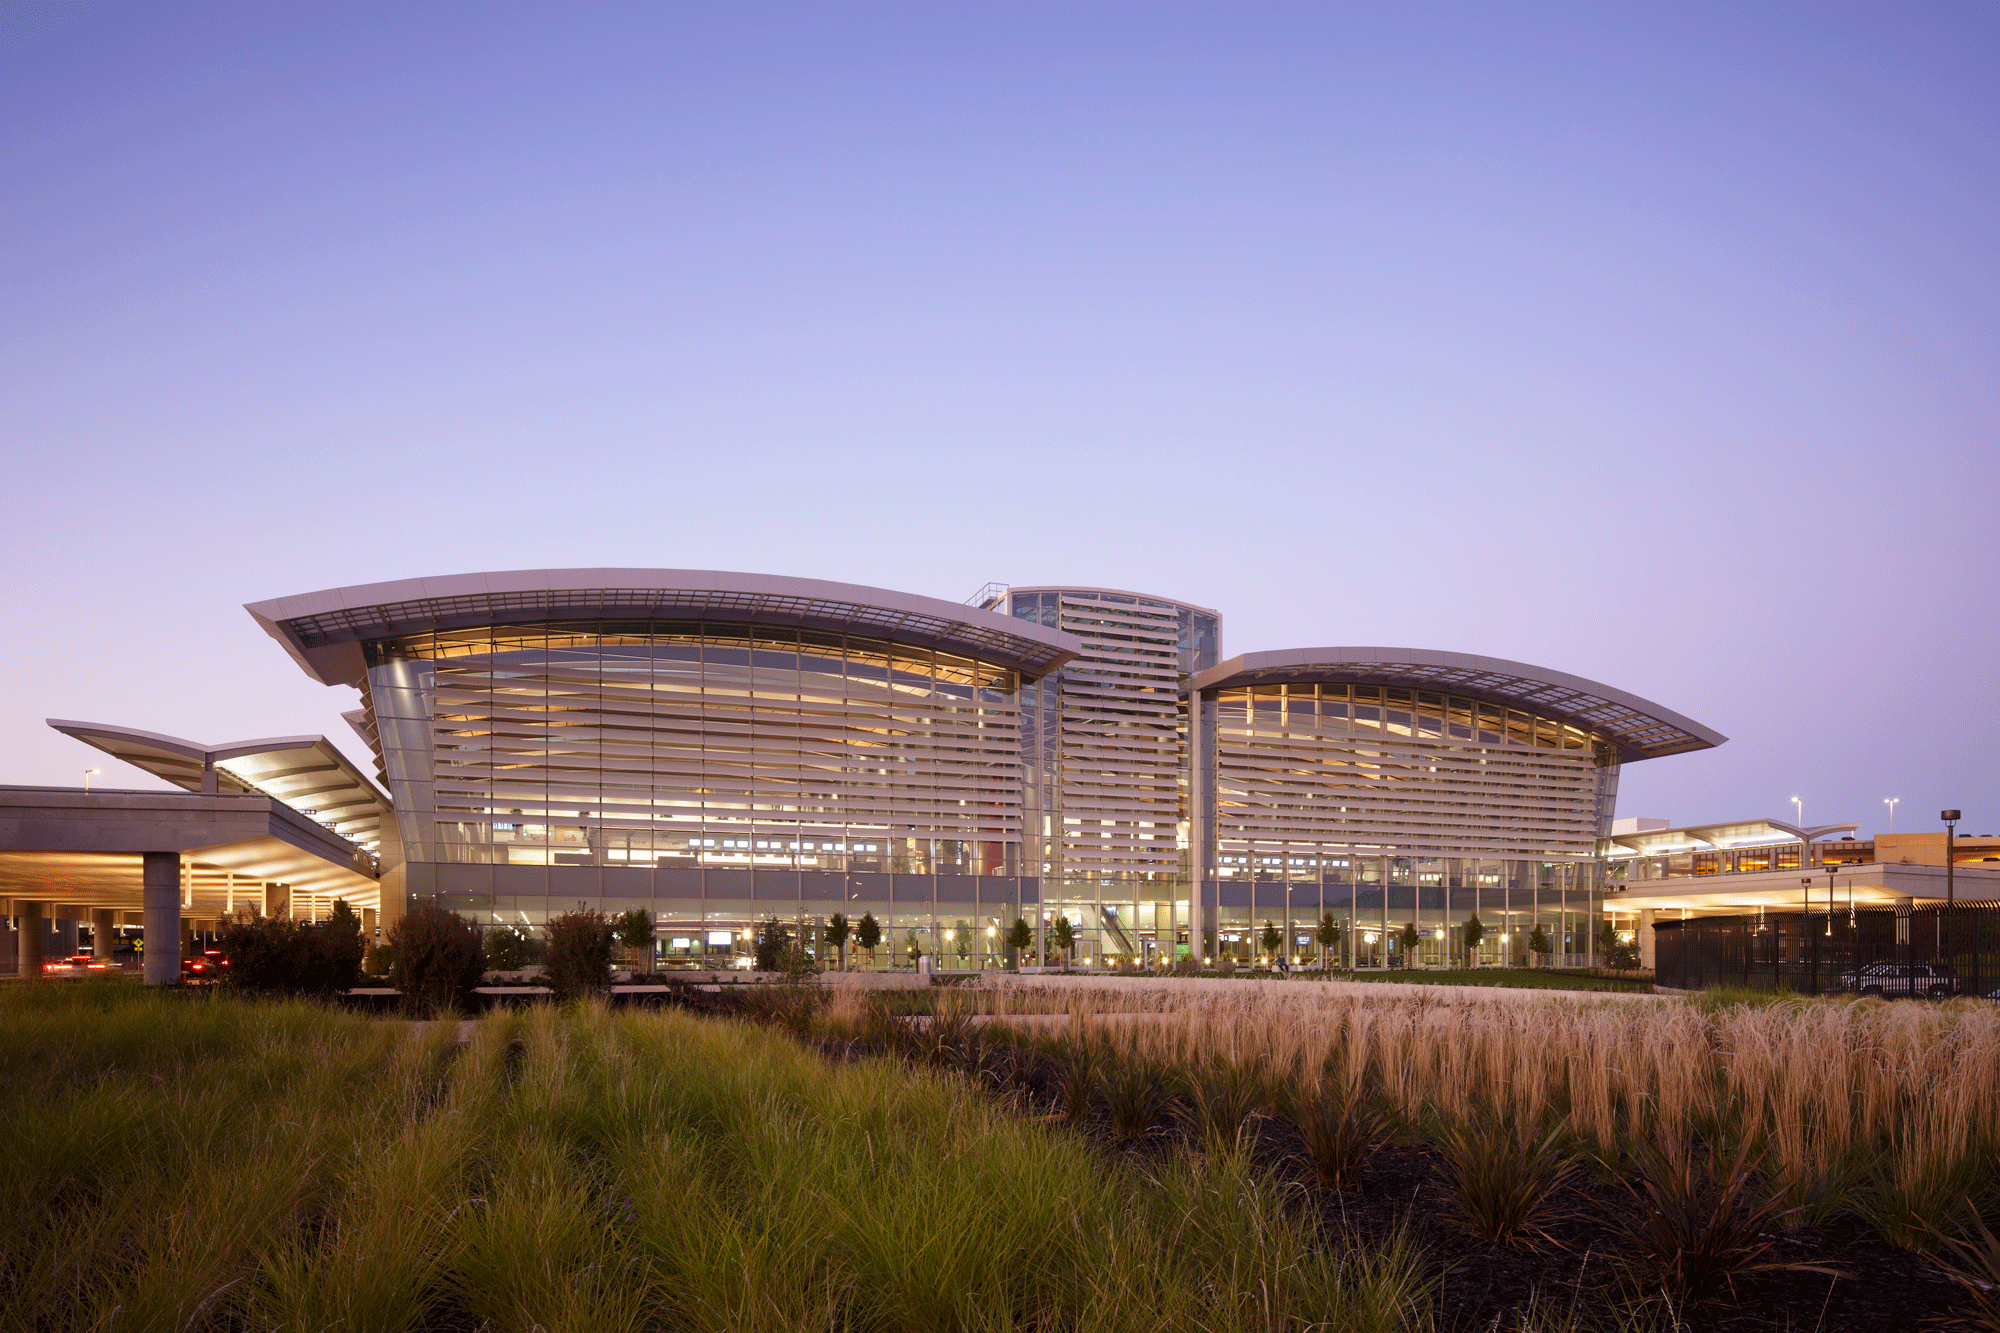 Sacramento International Airport (SMF) - Central Terminal B